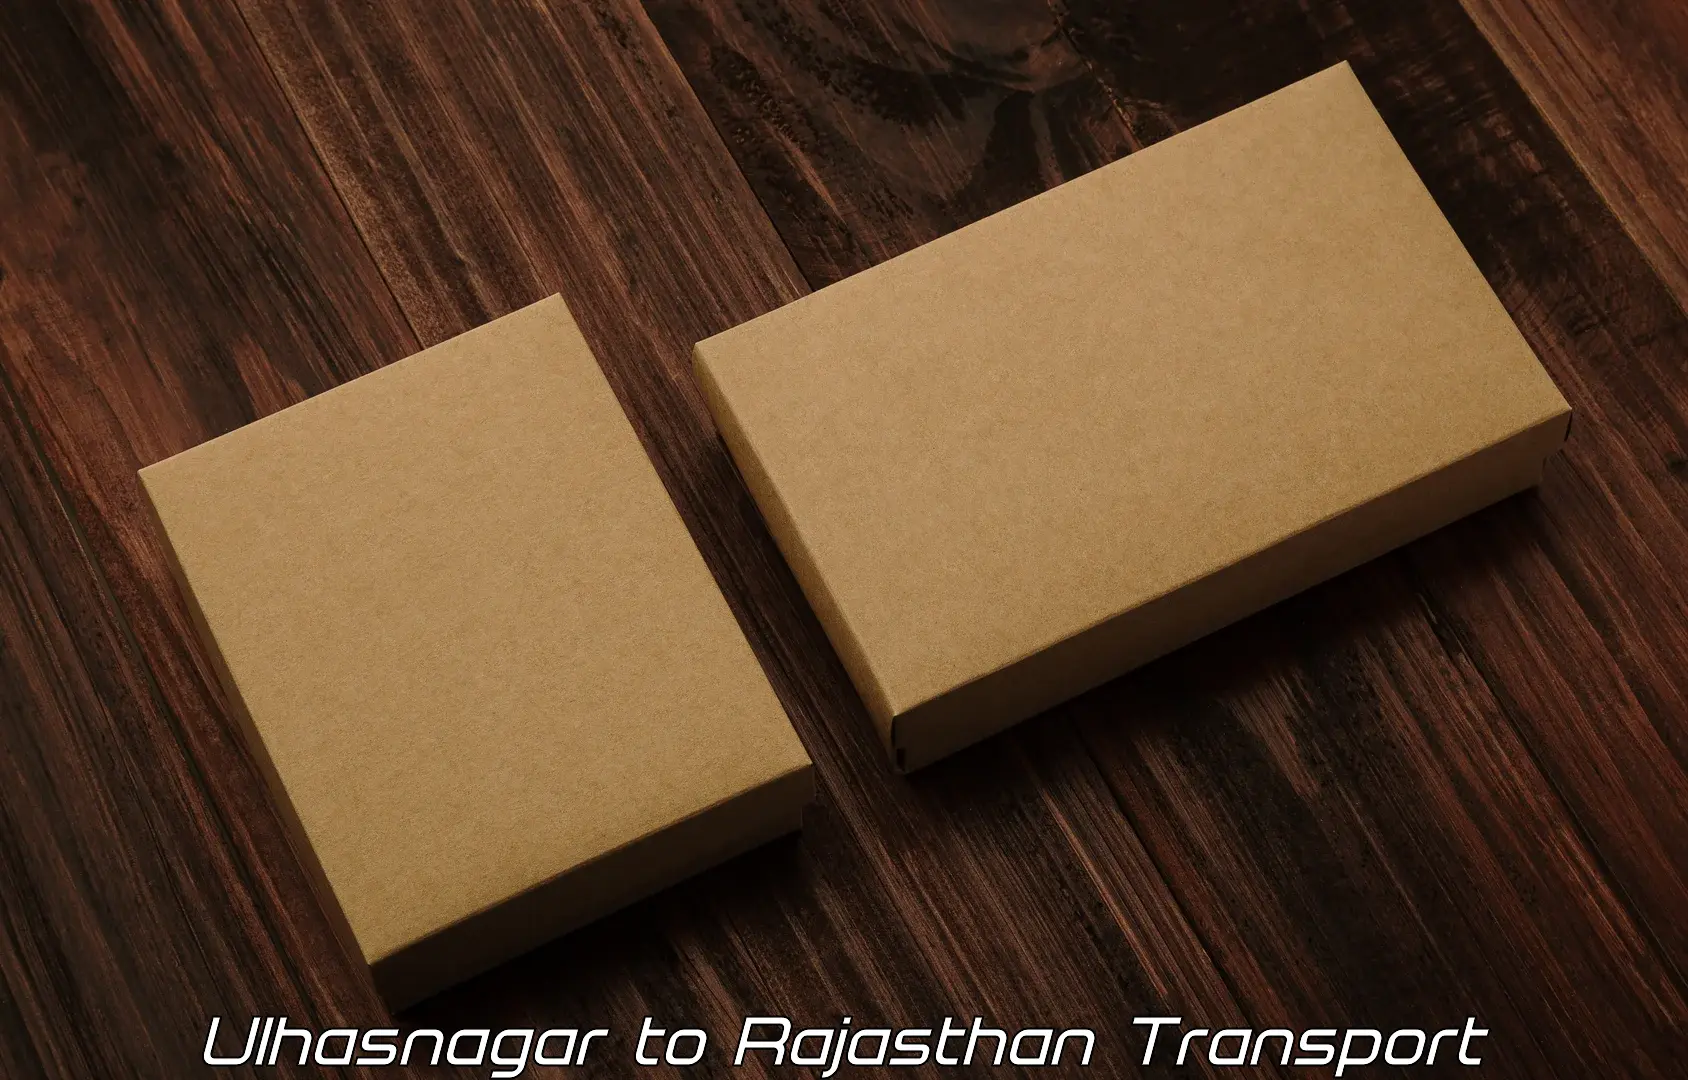 Container transport service Ulhasnagar to Nimbahera